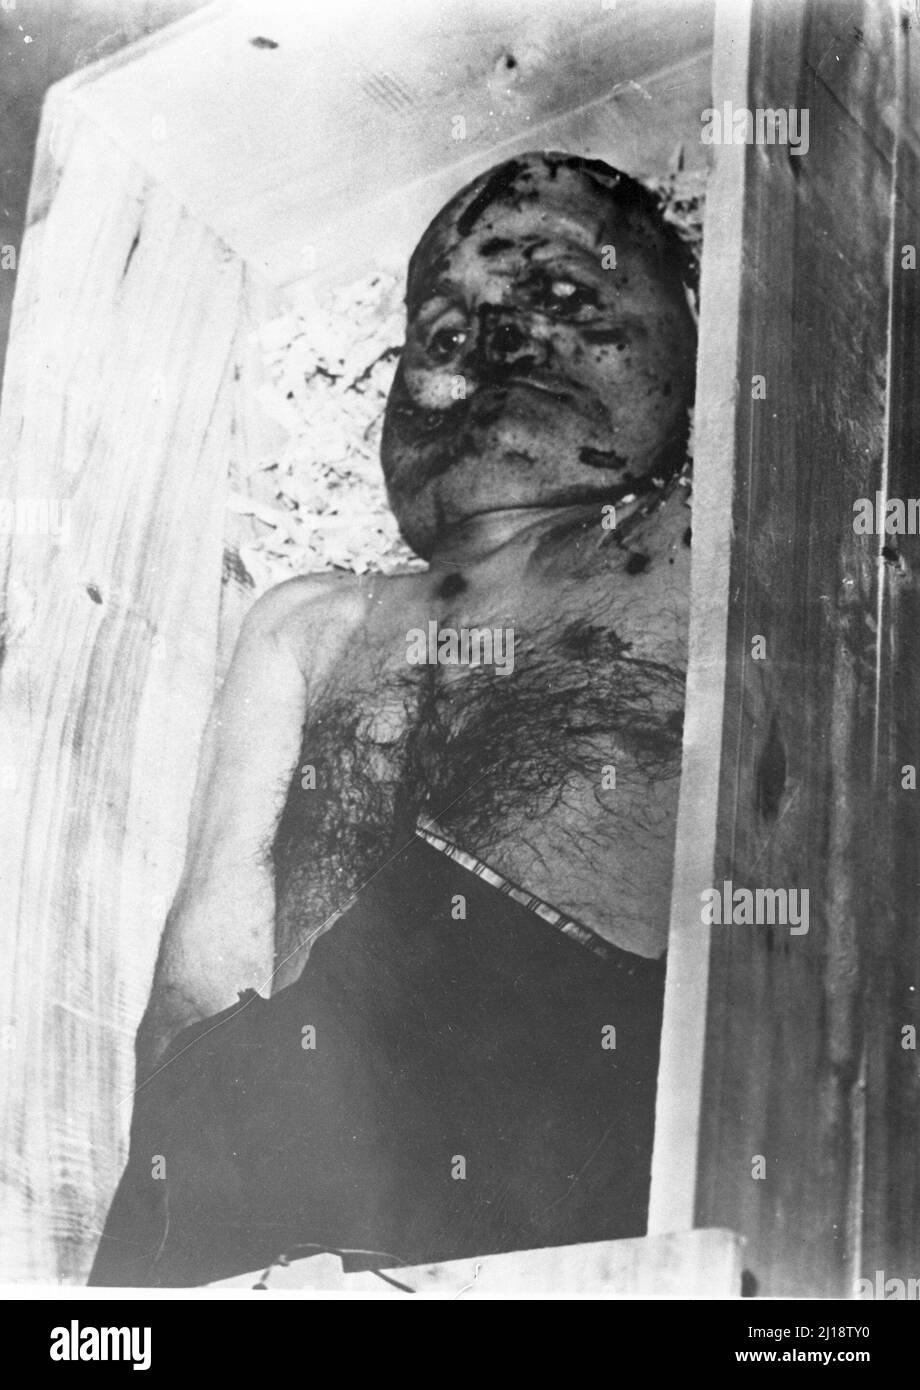 Fascismo - Duce Benito Mussolini - cavere di Mussolini nella cassa di legno - Milano, Oditorio via Ponzio - 30 aprile 1945 Foto Stock